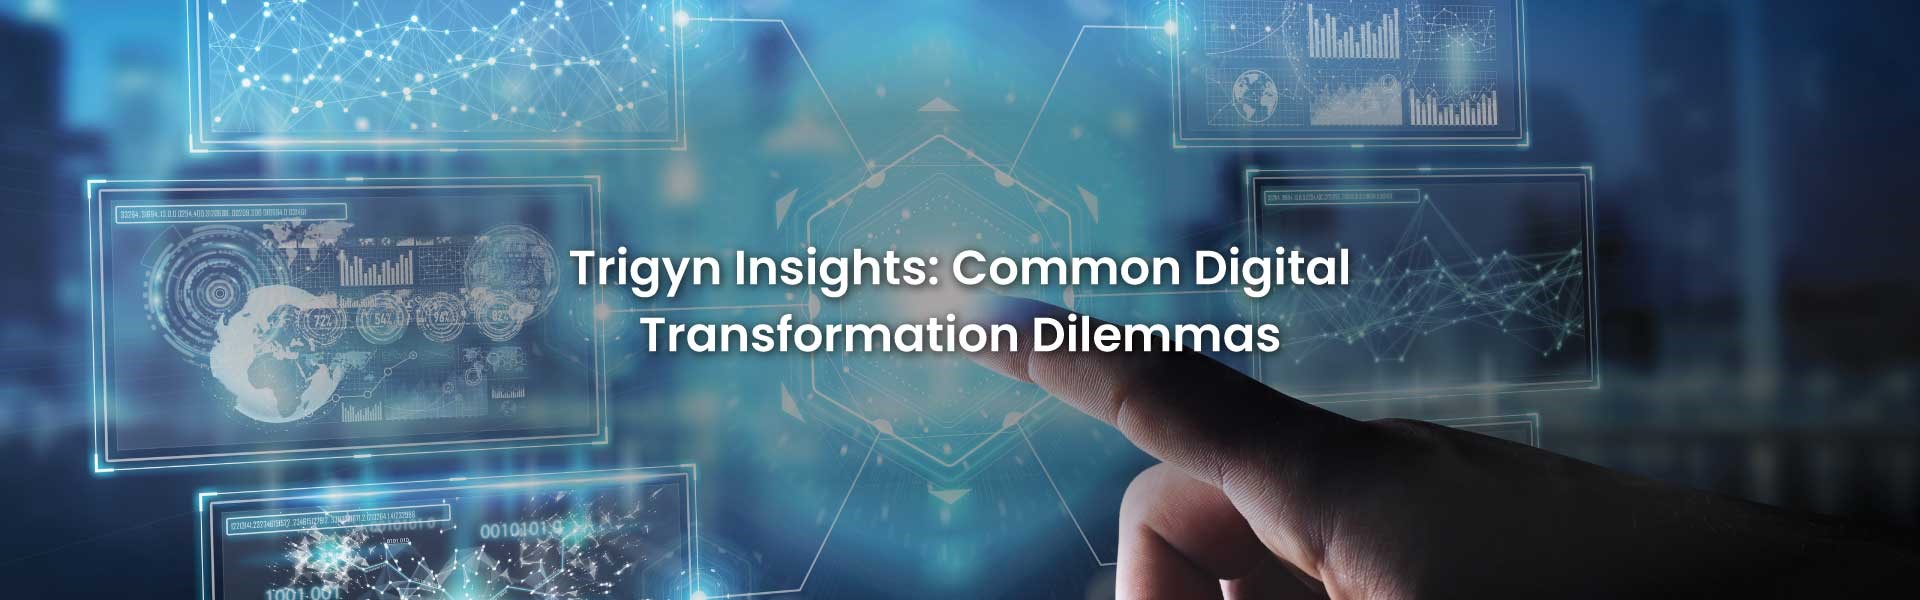 Digital Transformation Dilemmas 